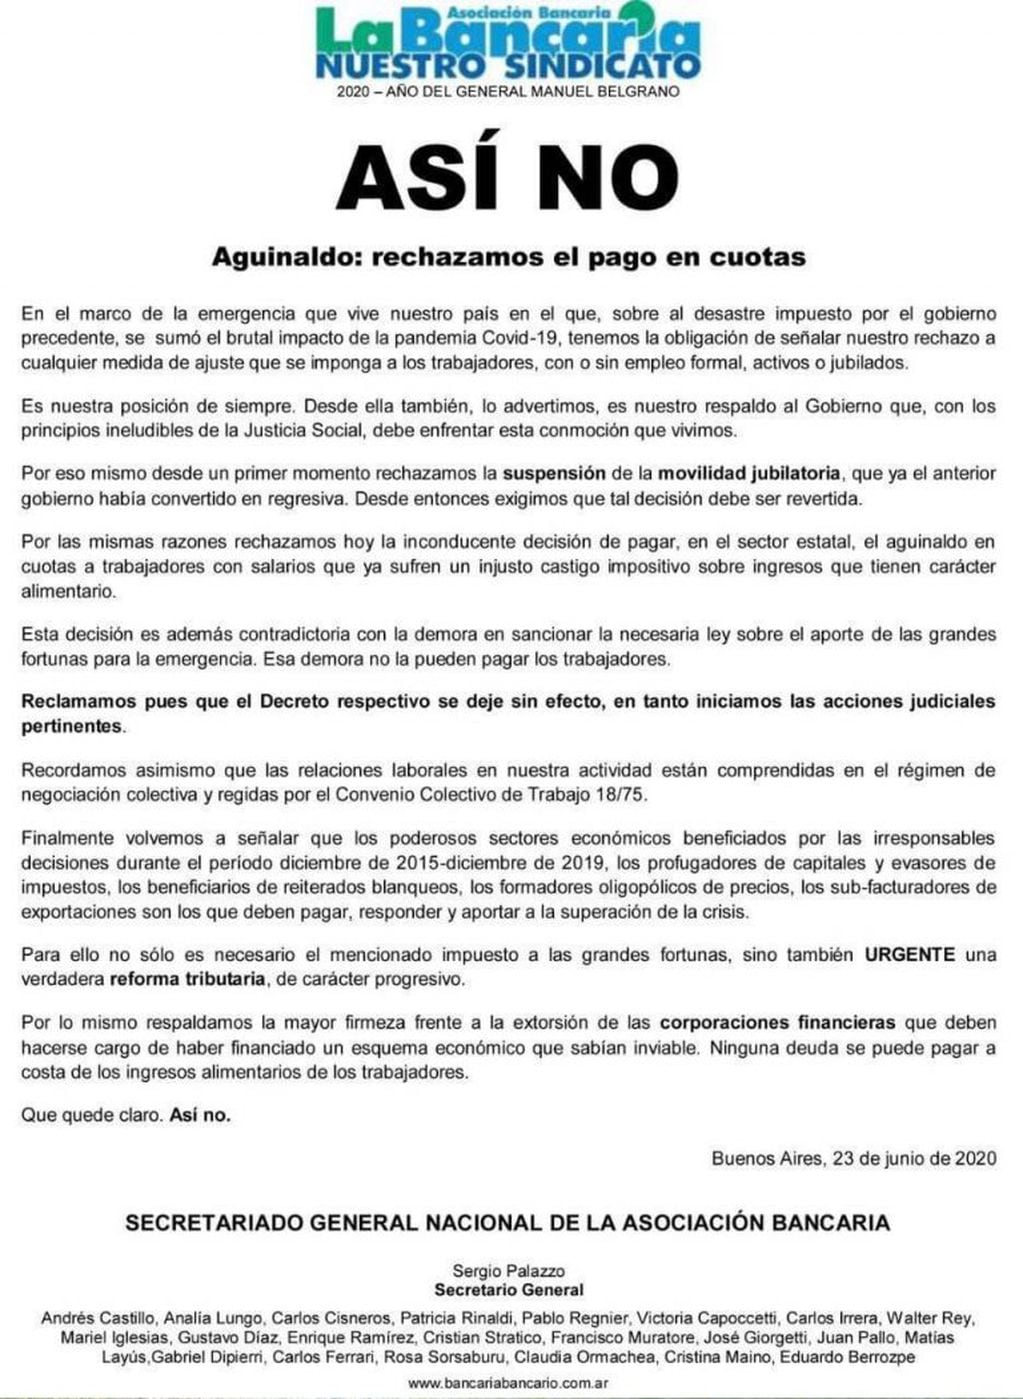 El comunicado de la Bancaria en contra del pago en cuotas del aguinaldo (Web)